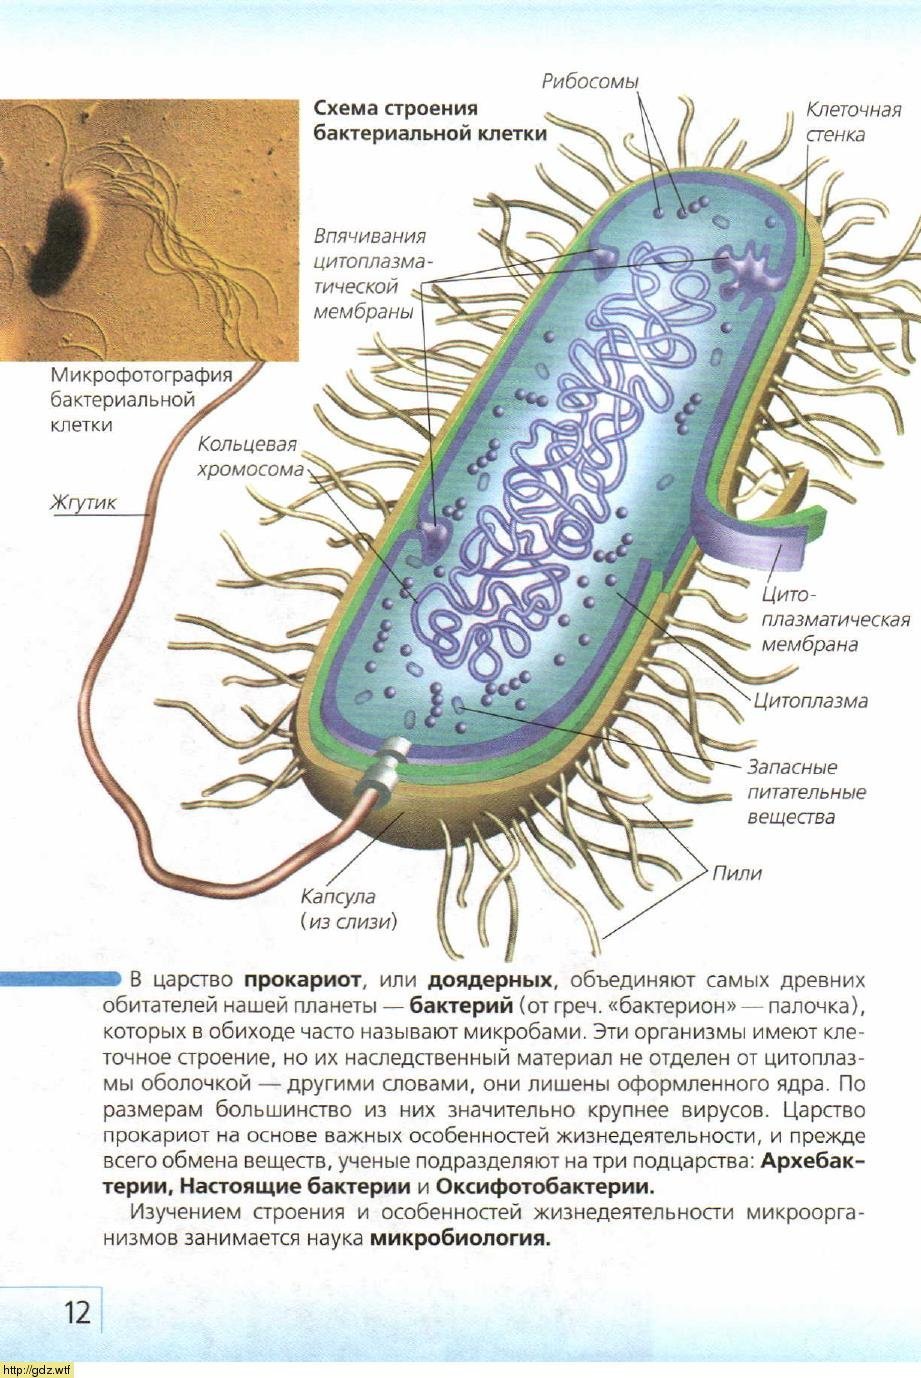 Какие особенности бактериальной клетки. Строение бактериальной клетки прокариот. Строение бактериальной клетки. Особенности строения бактериальной клетки. Строение прокариот.